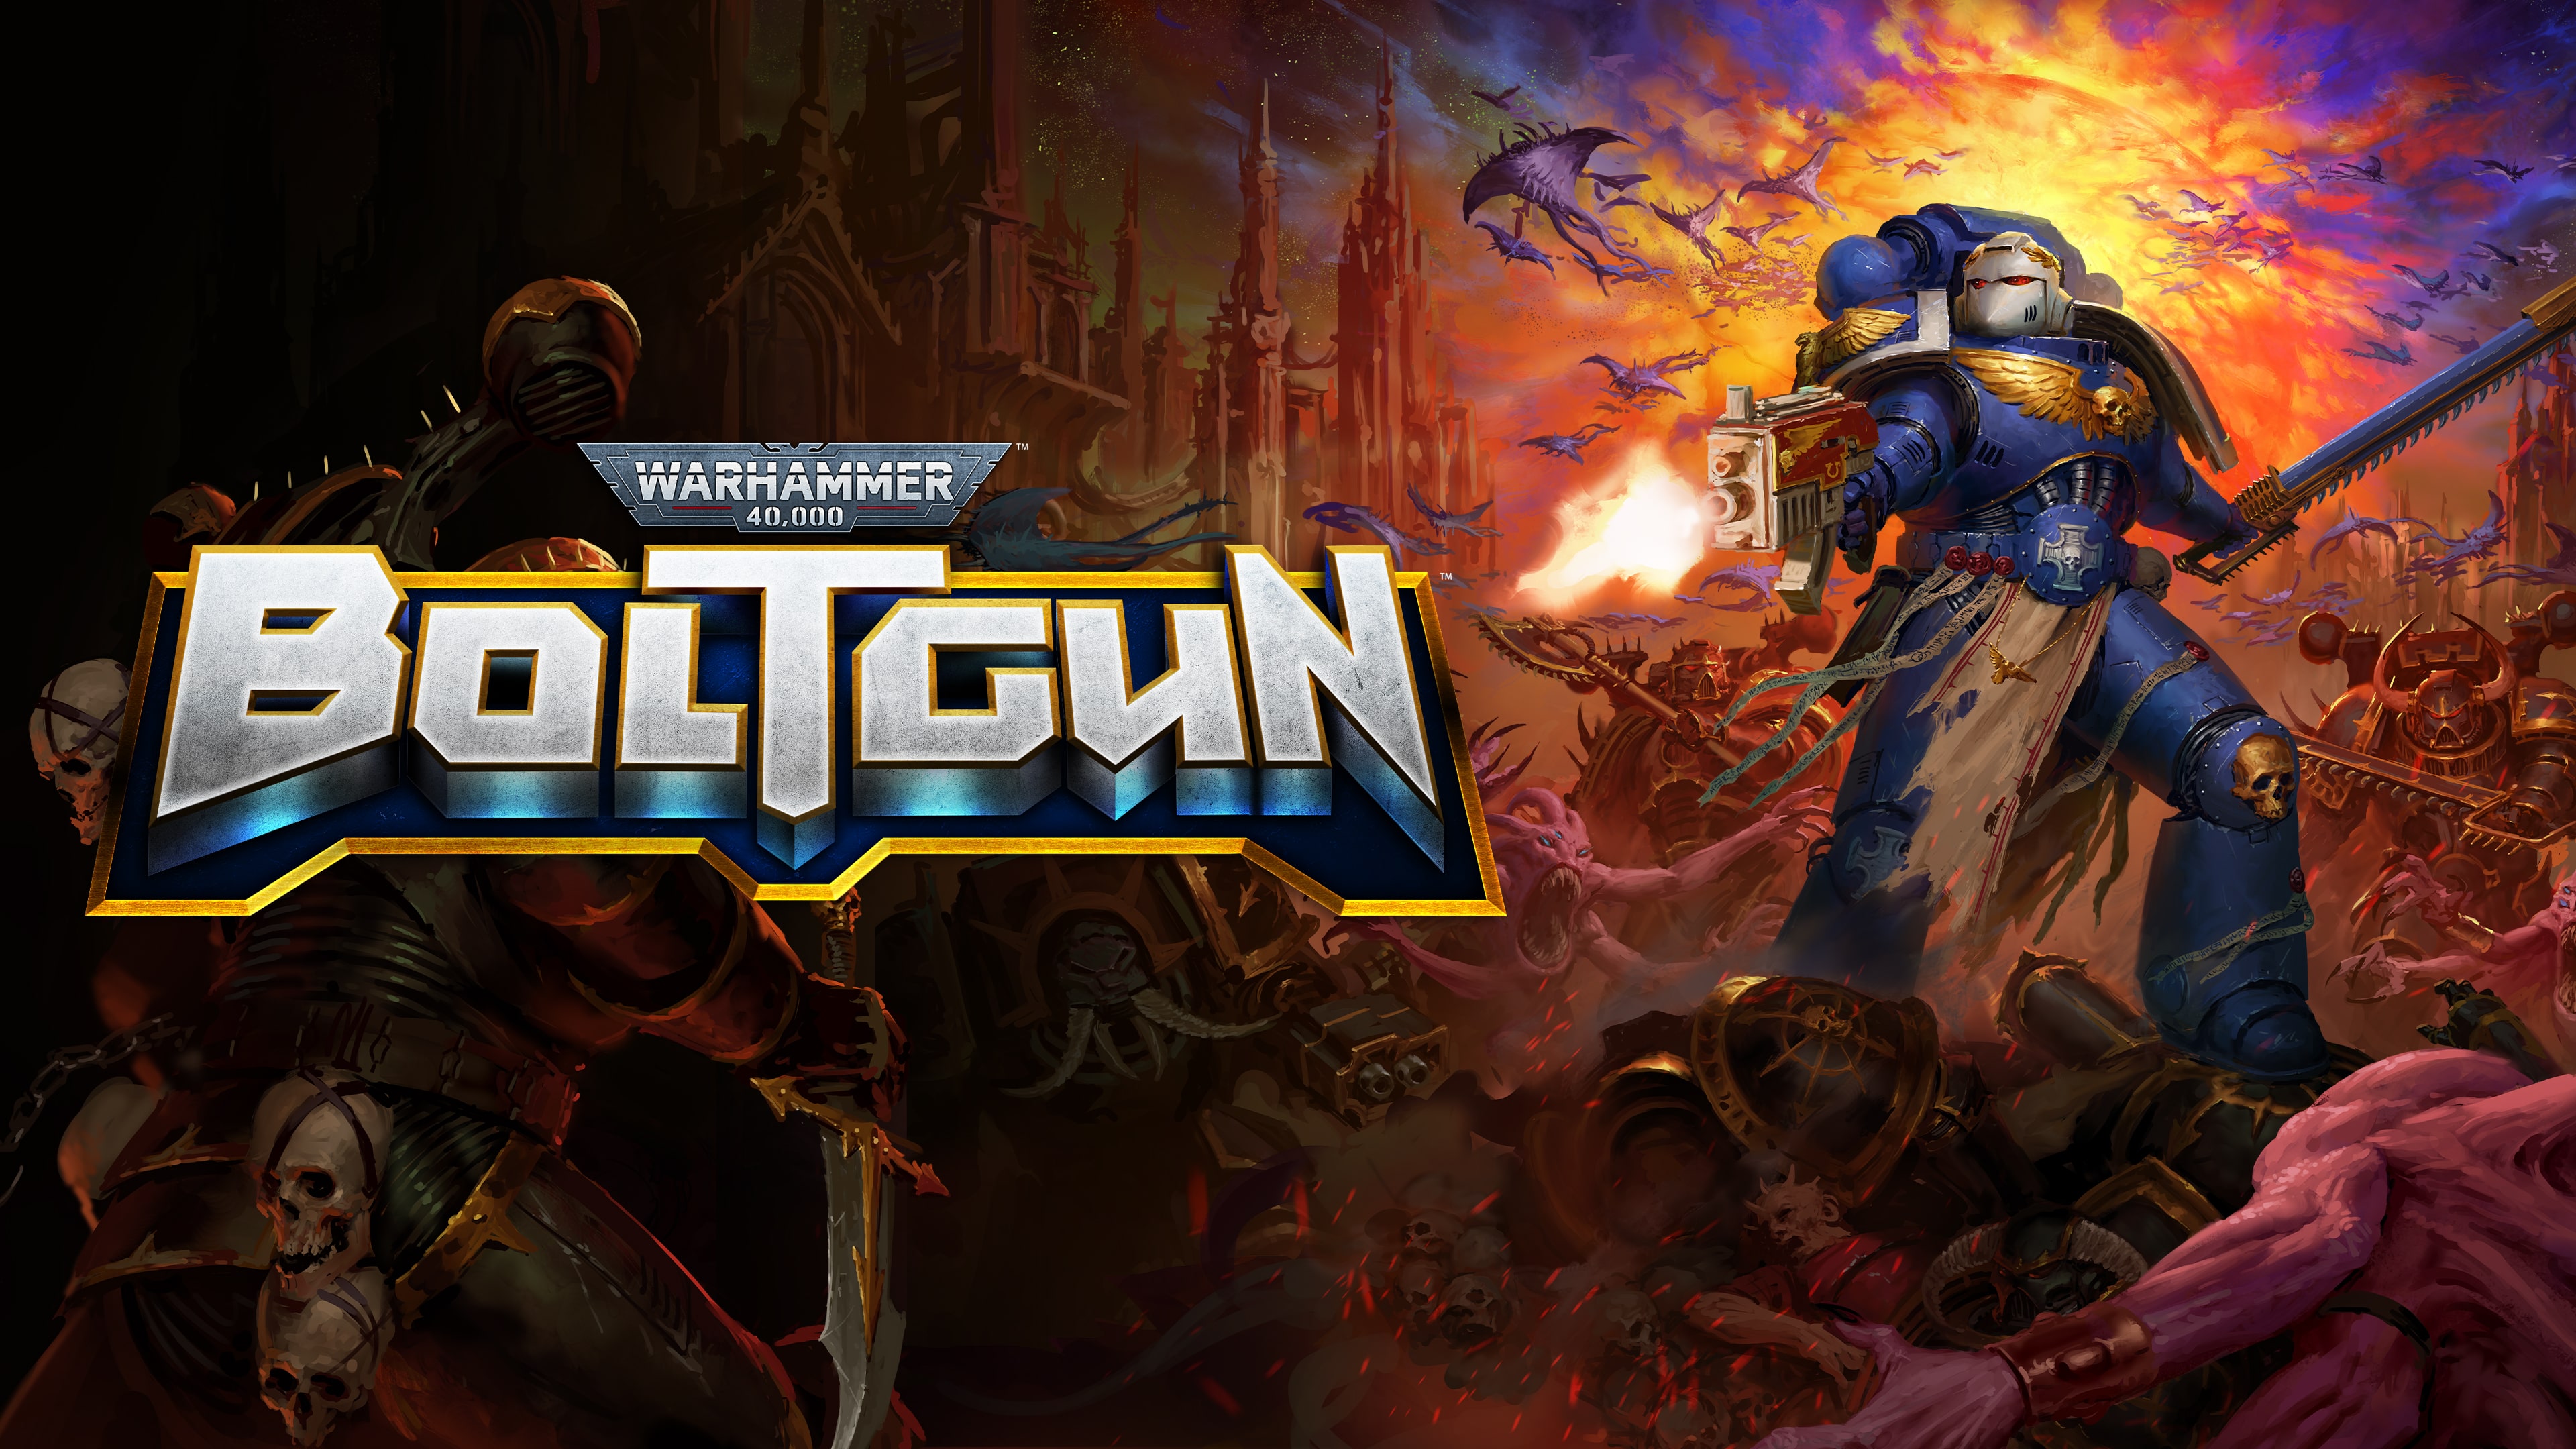 Warhammer 40,000: Boltgun (PS4 & PS5)